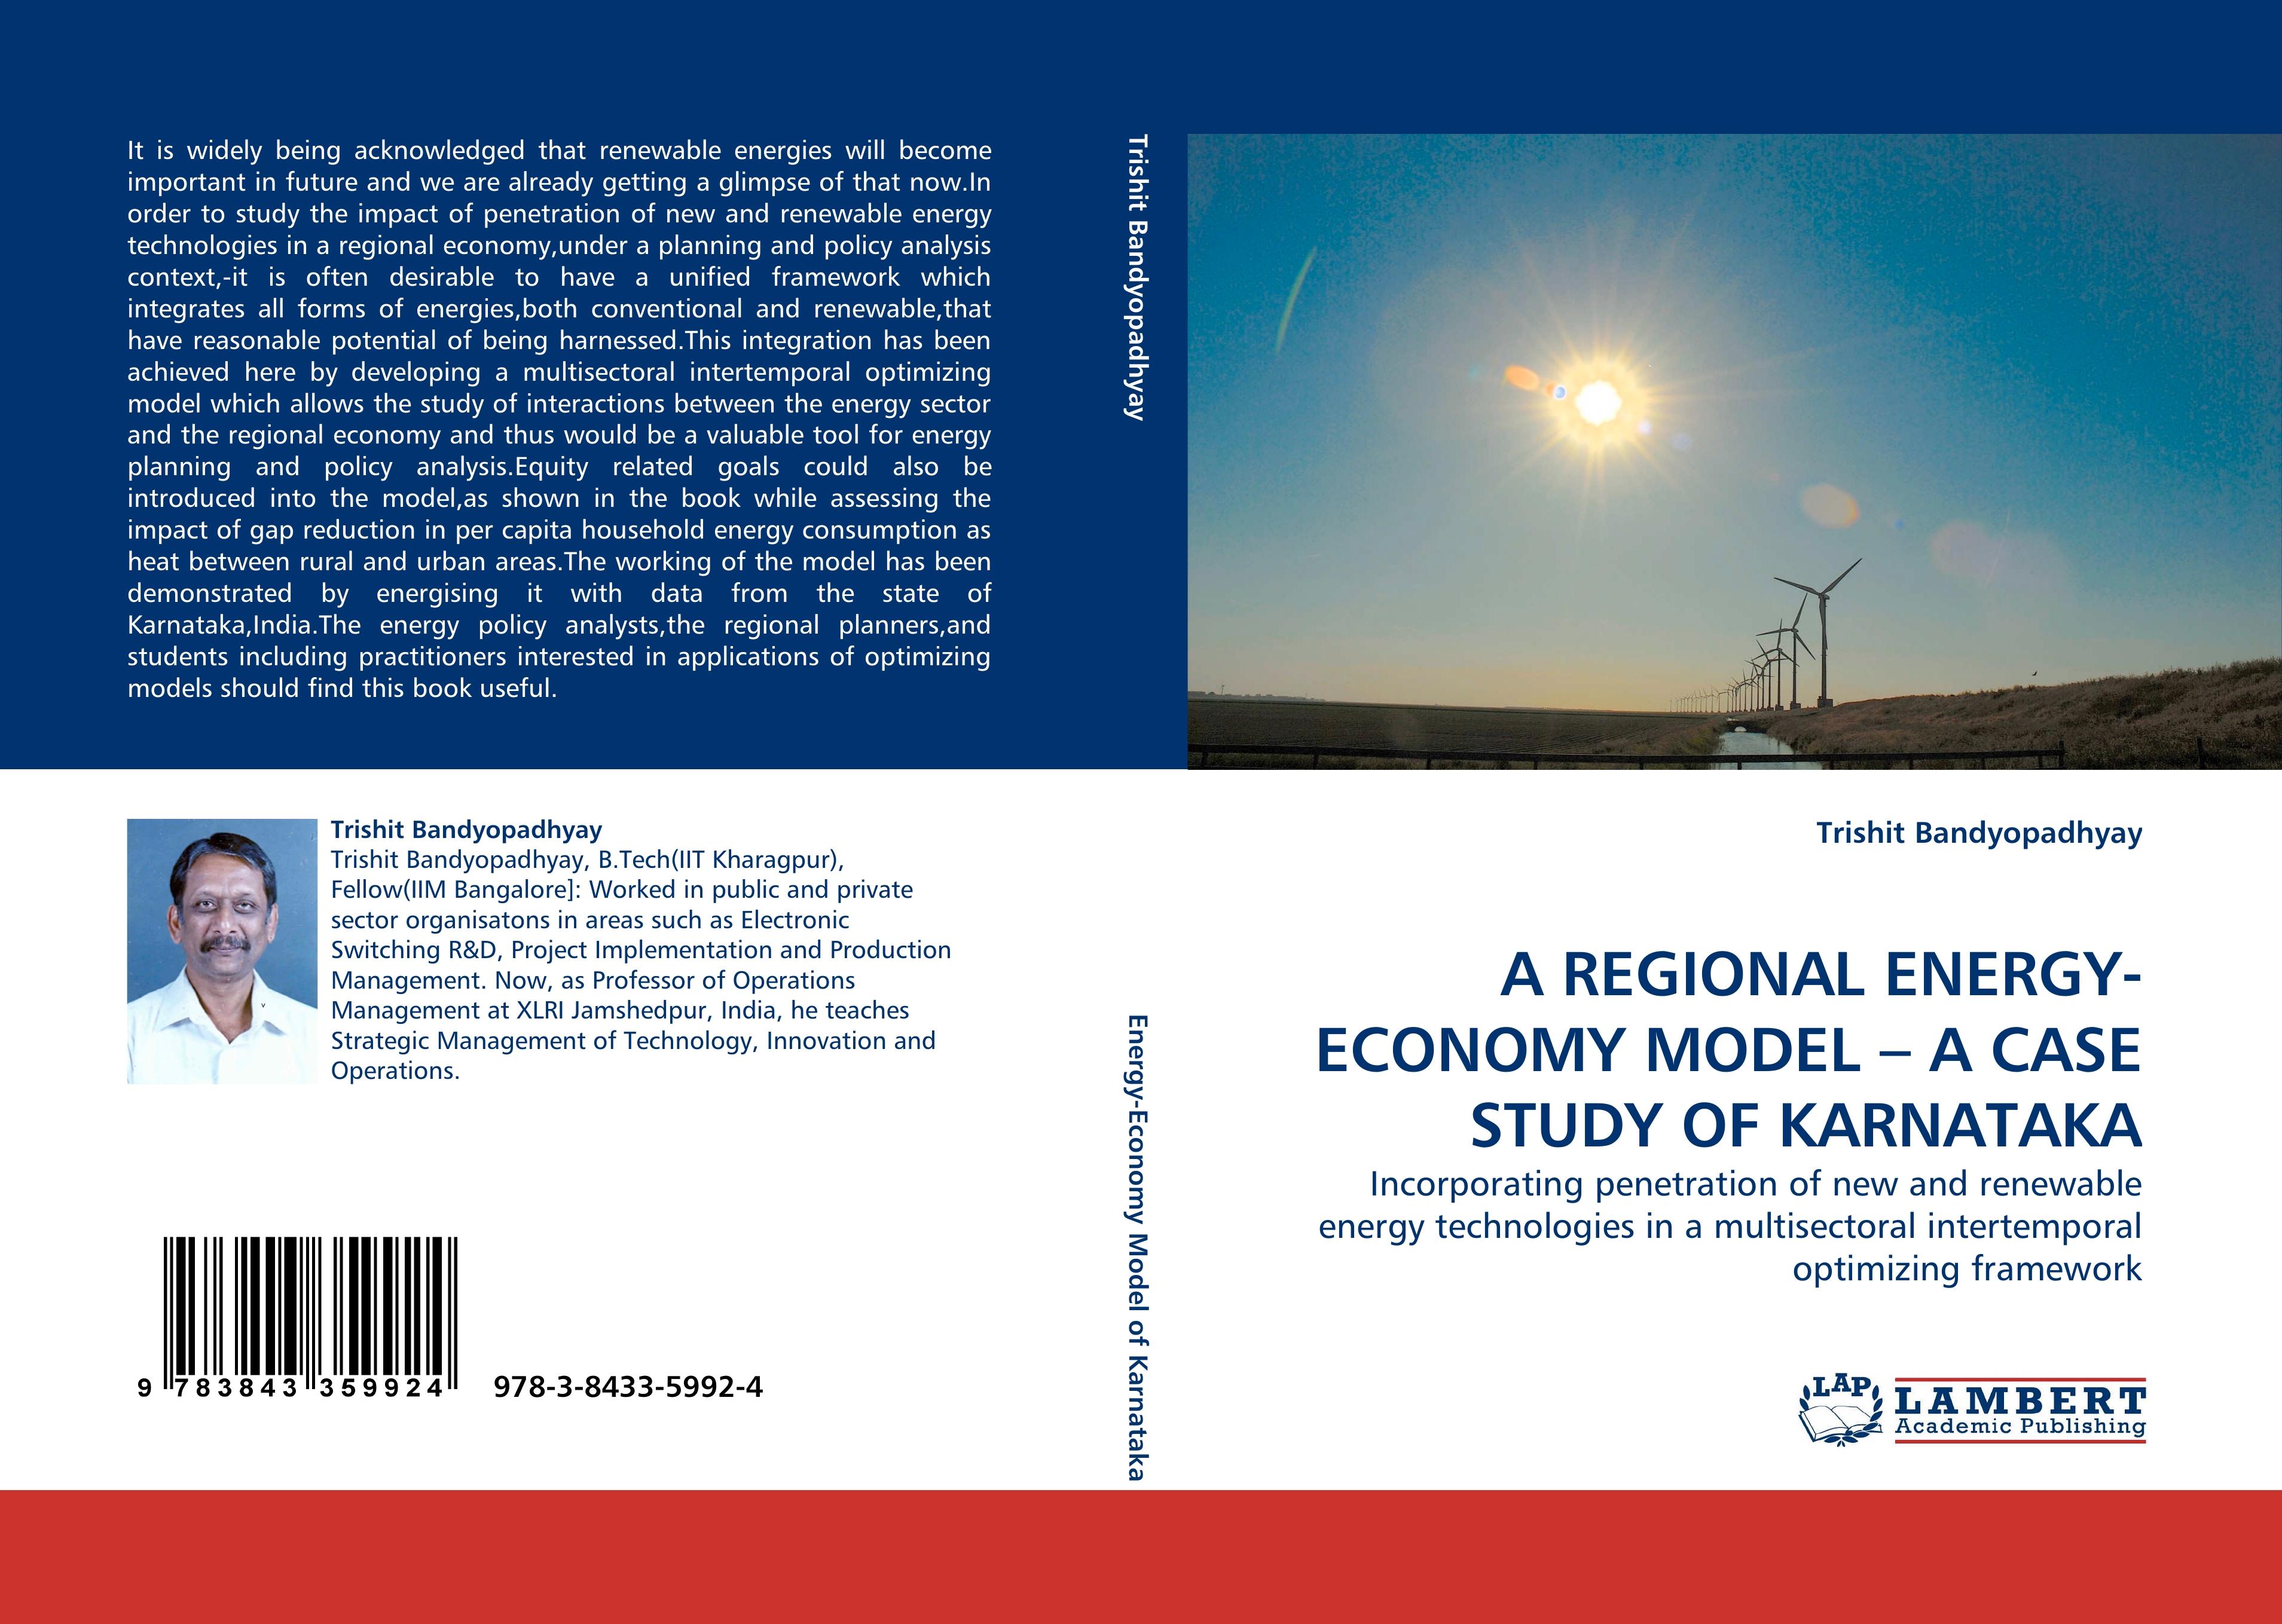 A REGIONAL ENERGY-ECONOMY MODEL   A CASE STUDY OF KARNATAKA - Trishit Bandyopadhyay